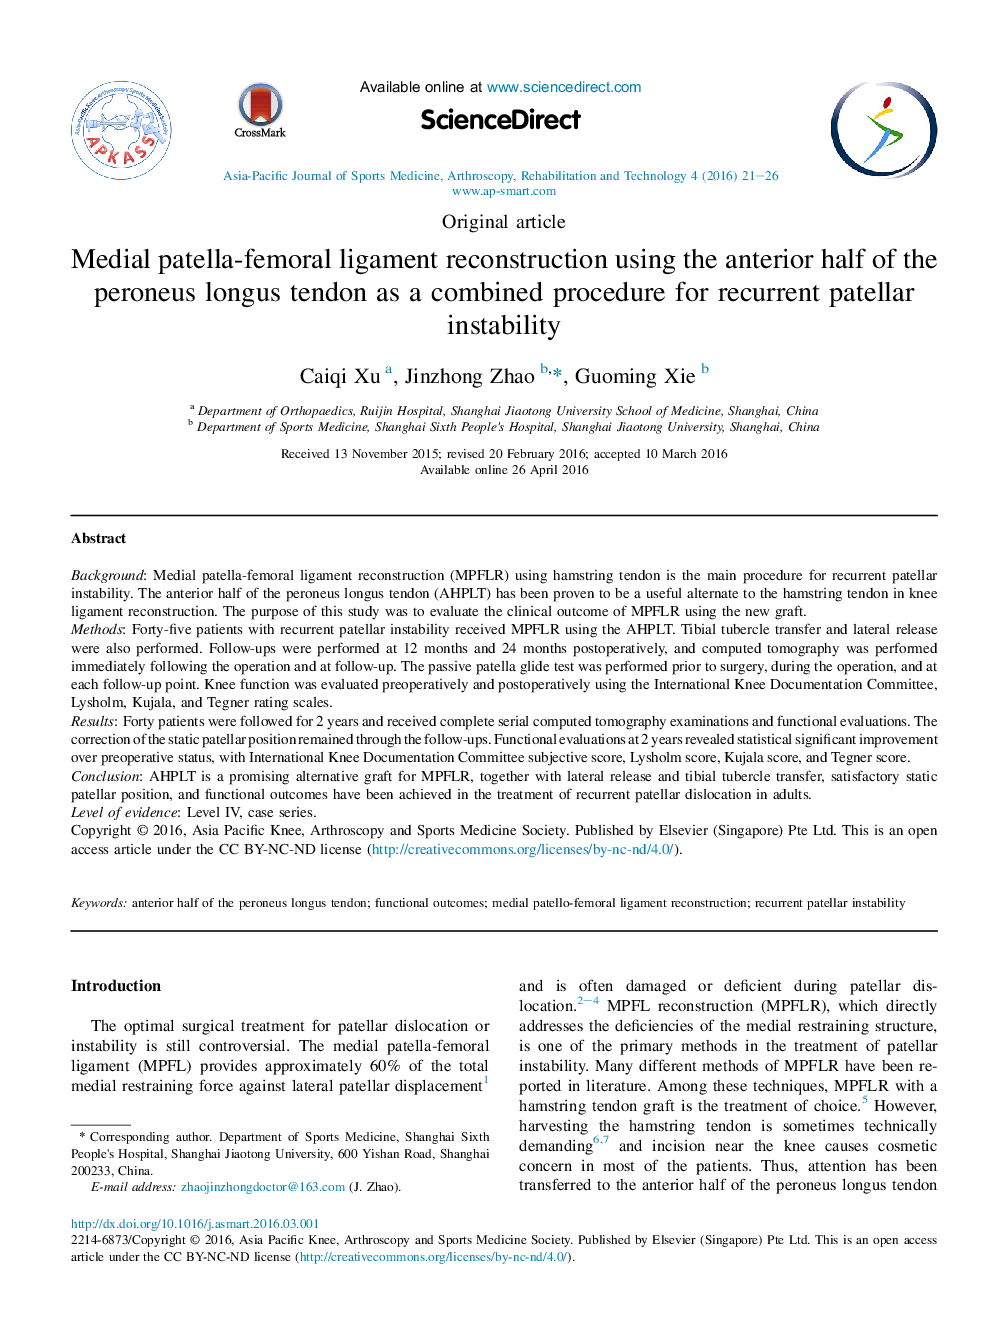 بازسازی رباط مچ پا _ فمورال با استفاده از نیمه قدام تاندون طولانی مدت به عنوان یک روش ترکیبی برای بی ثباتی مکرر پاتلا